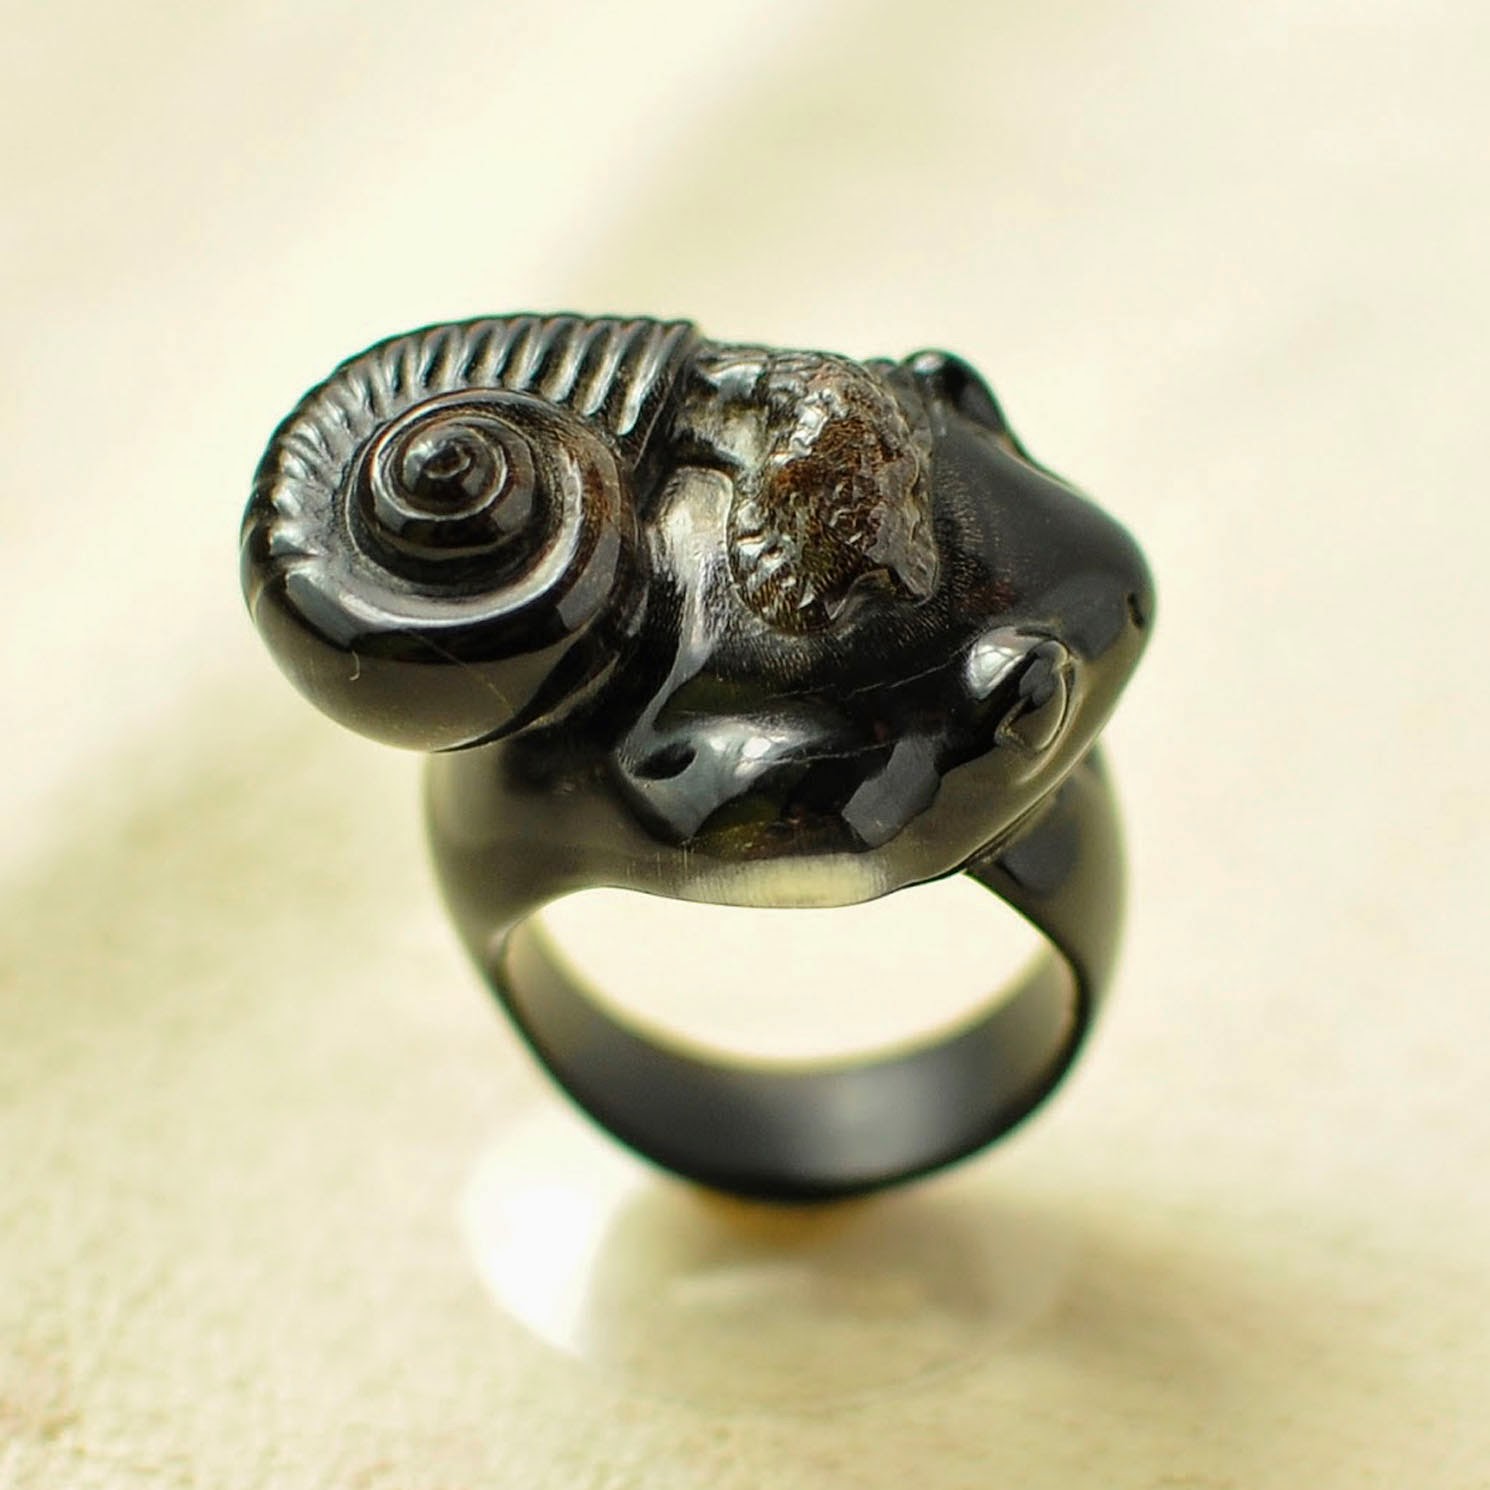 carved ring, авторские украшения, кольцо, резьба по рогу, рог буйвола, украшение из камней, улитка, элитное кольцо, 